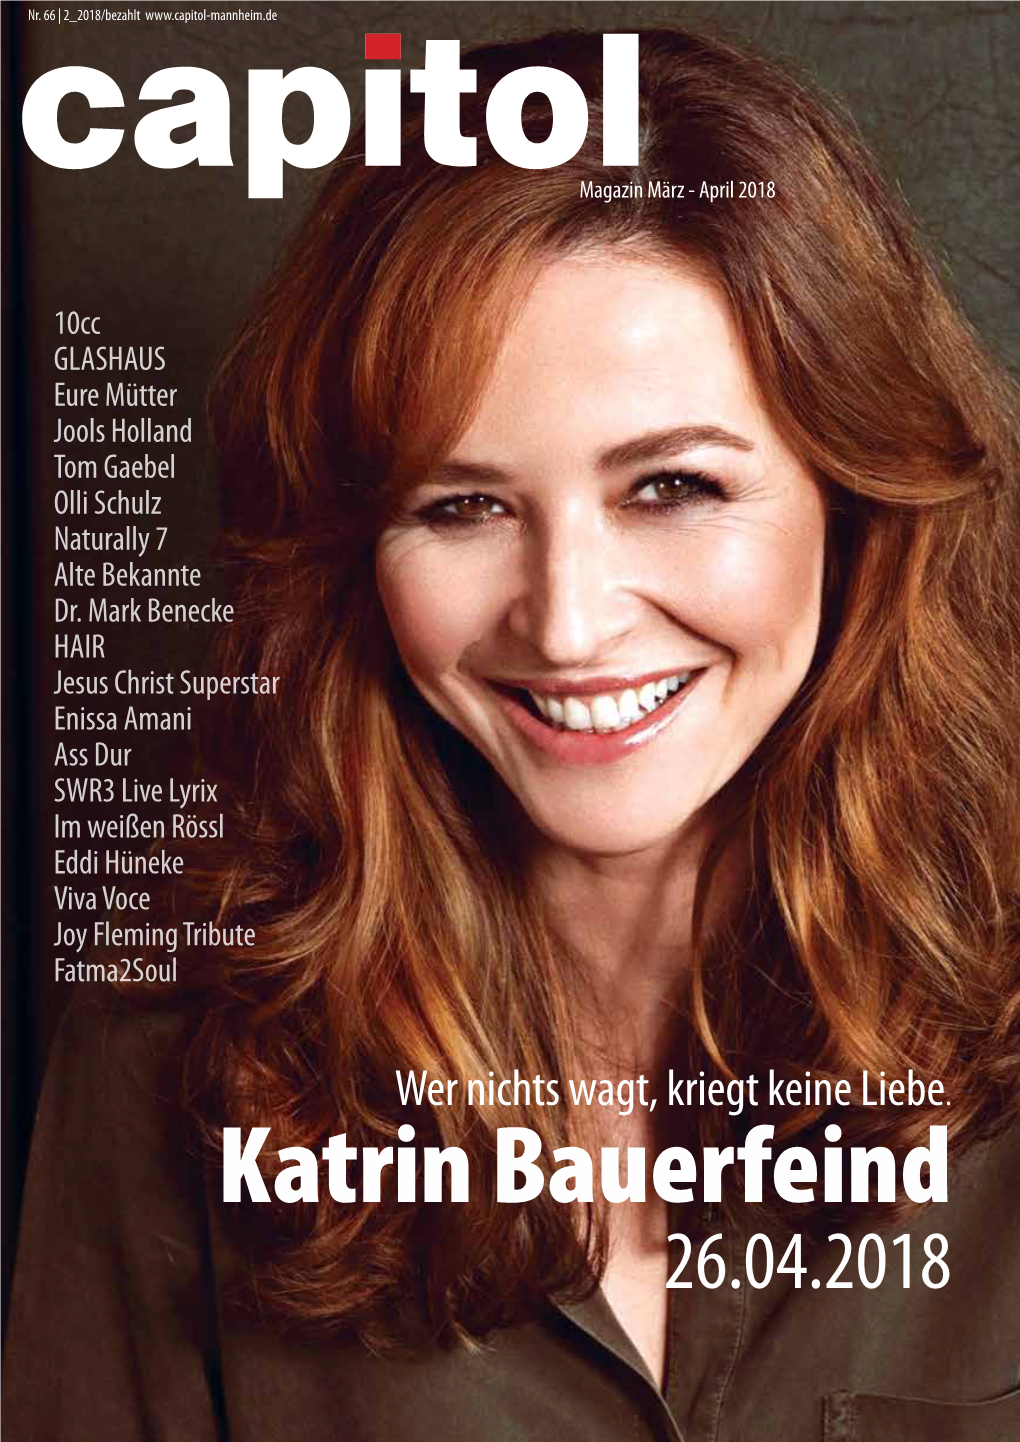 Katrin Bauerfeind 26.04.2018 / 2